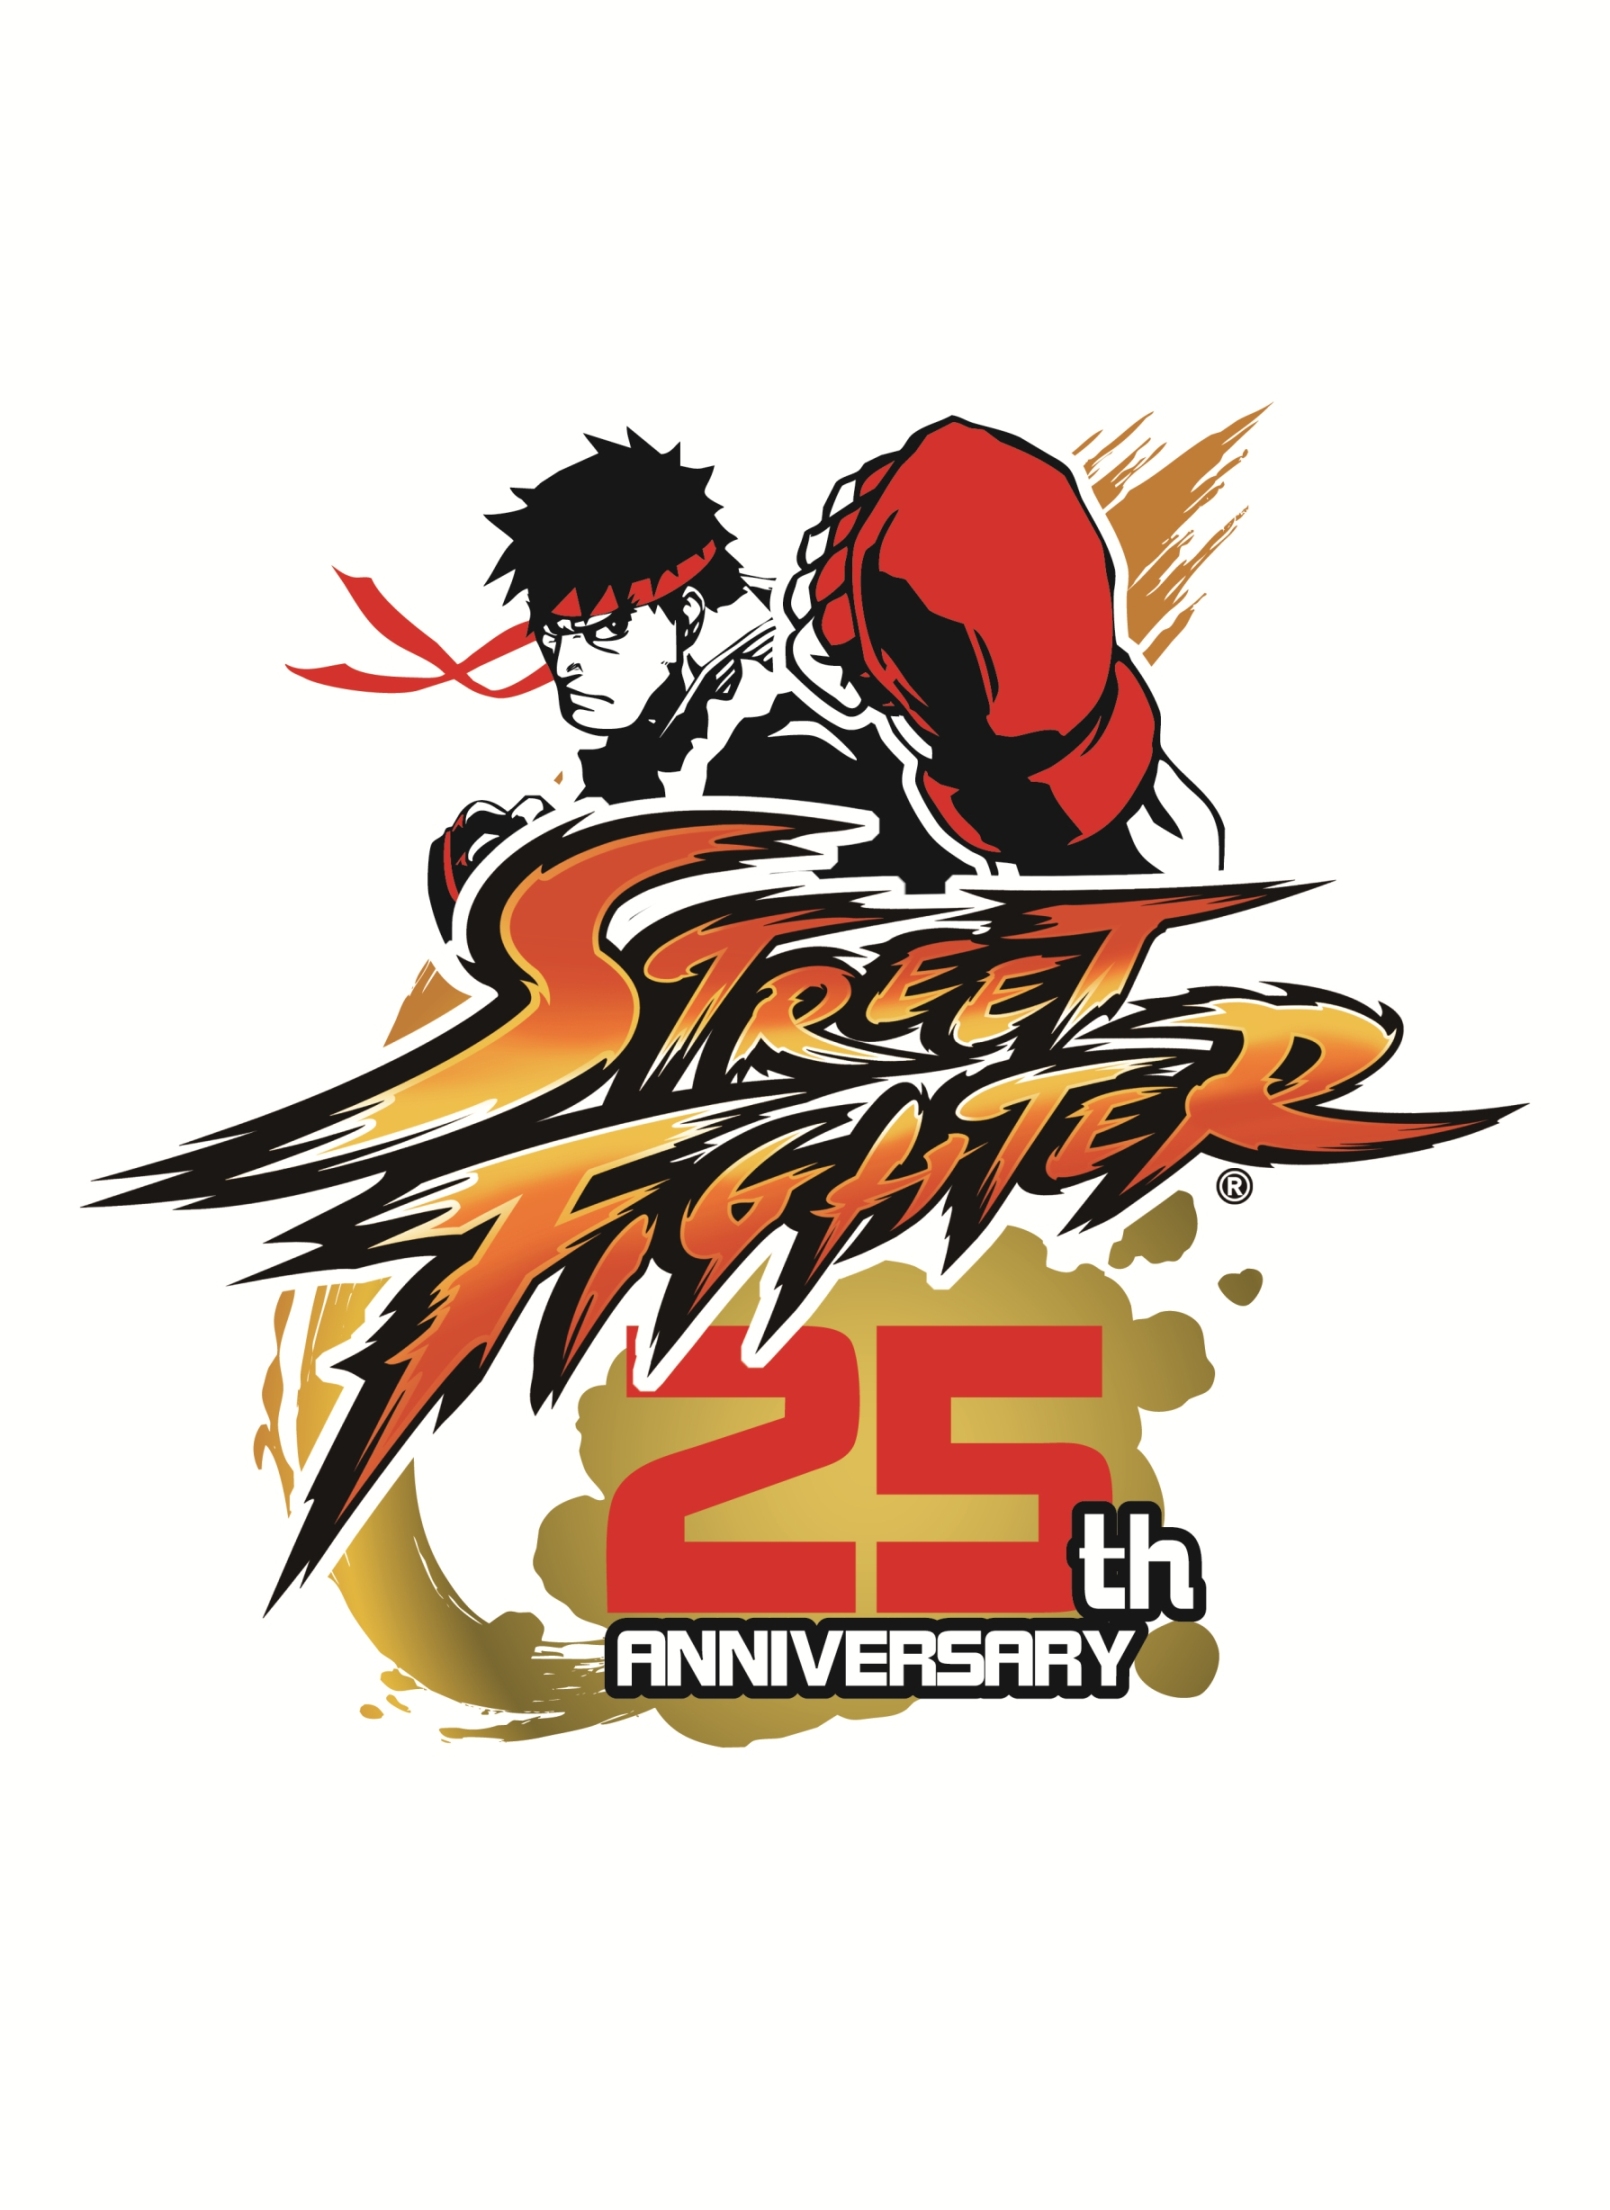 Les 25 ans de Street Fighter, un évènement mondial